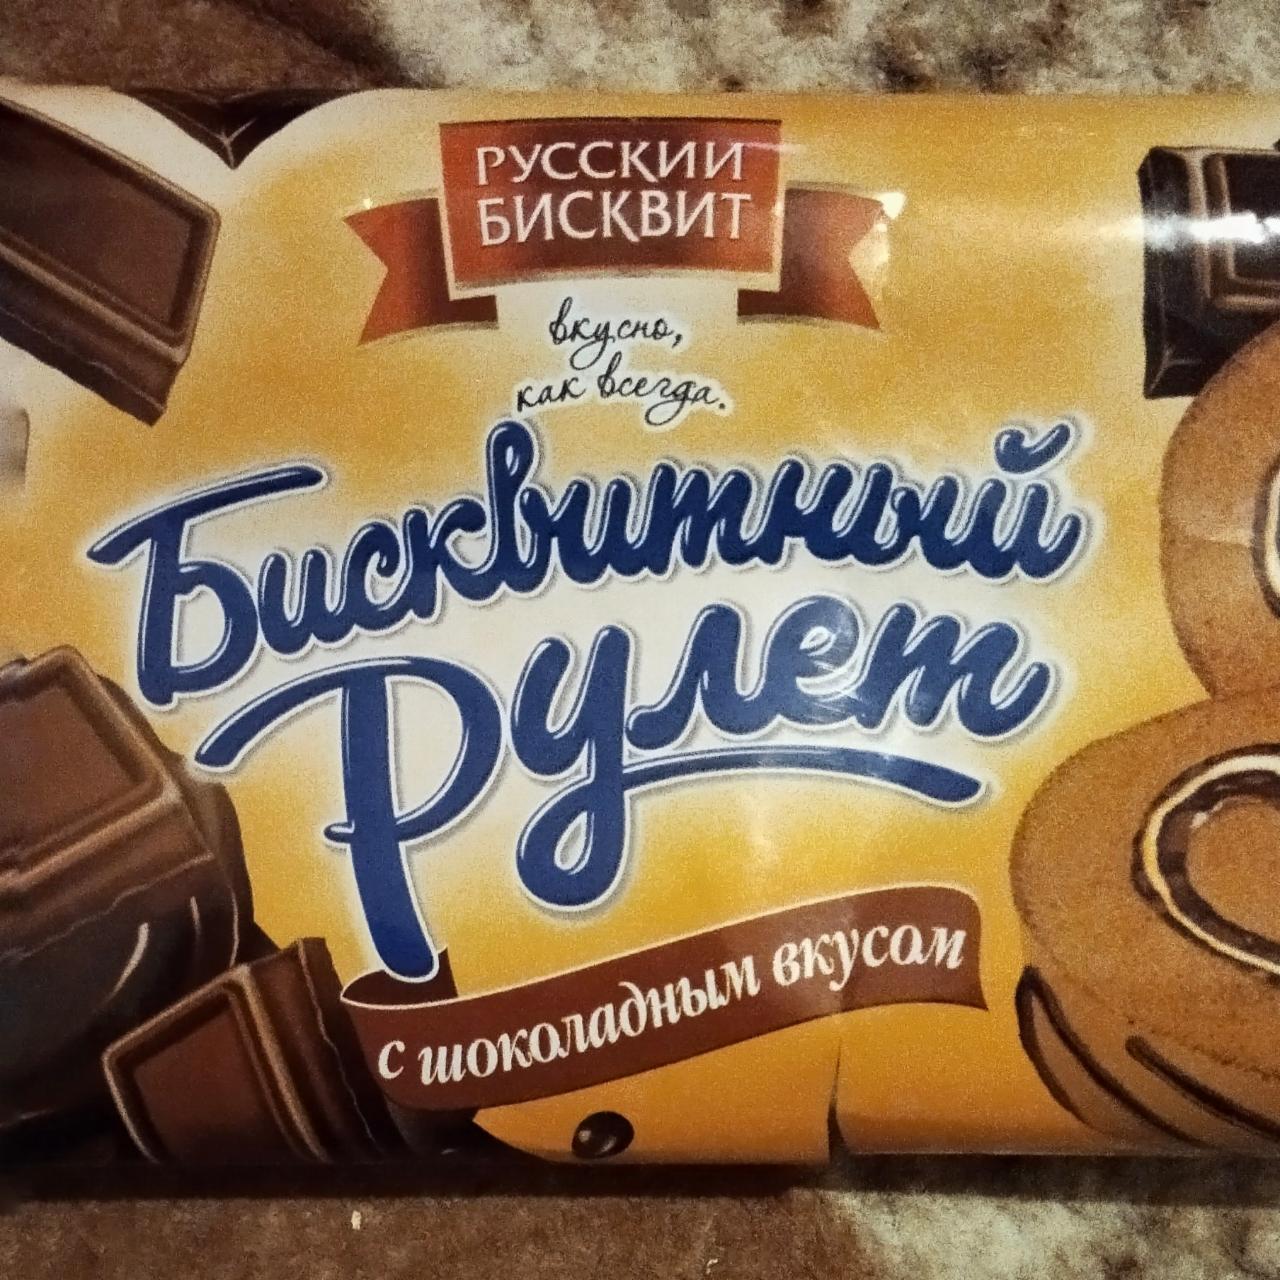 Фото - Бисквитный рулет с шоколадным вкусом Русский бисквит